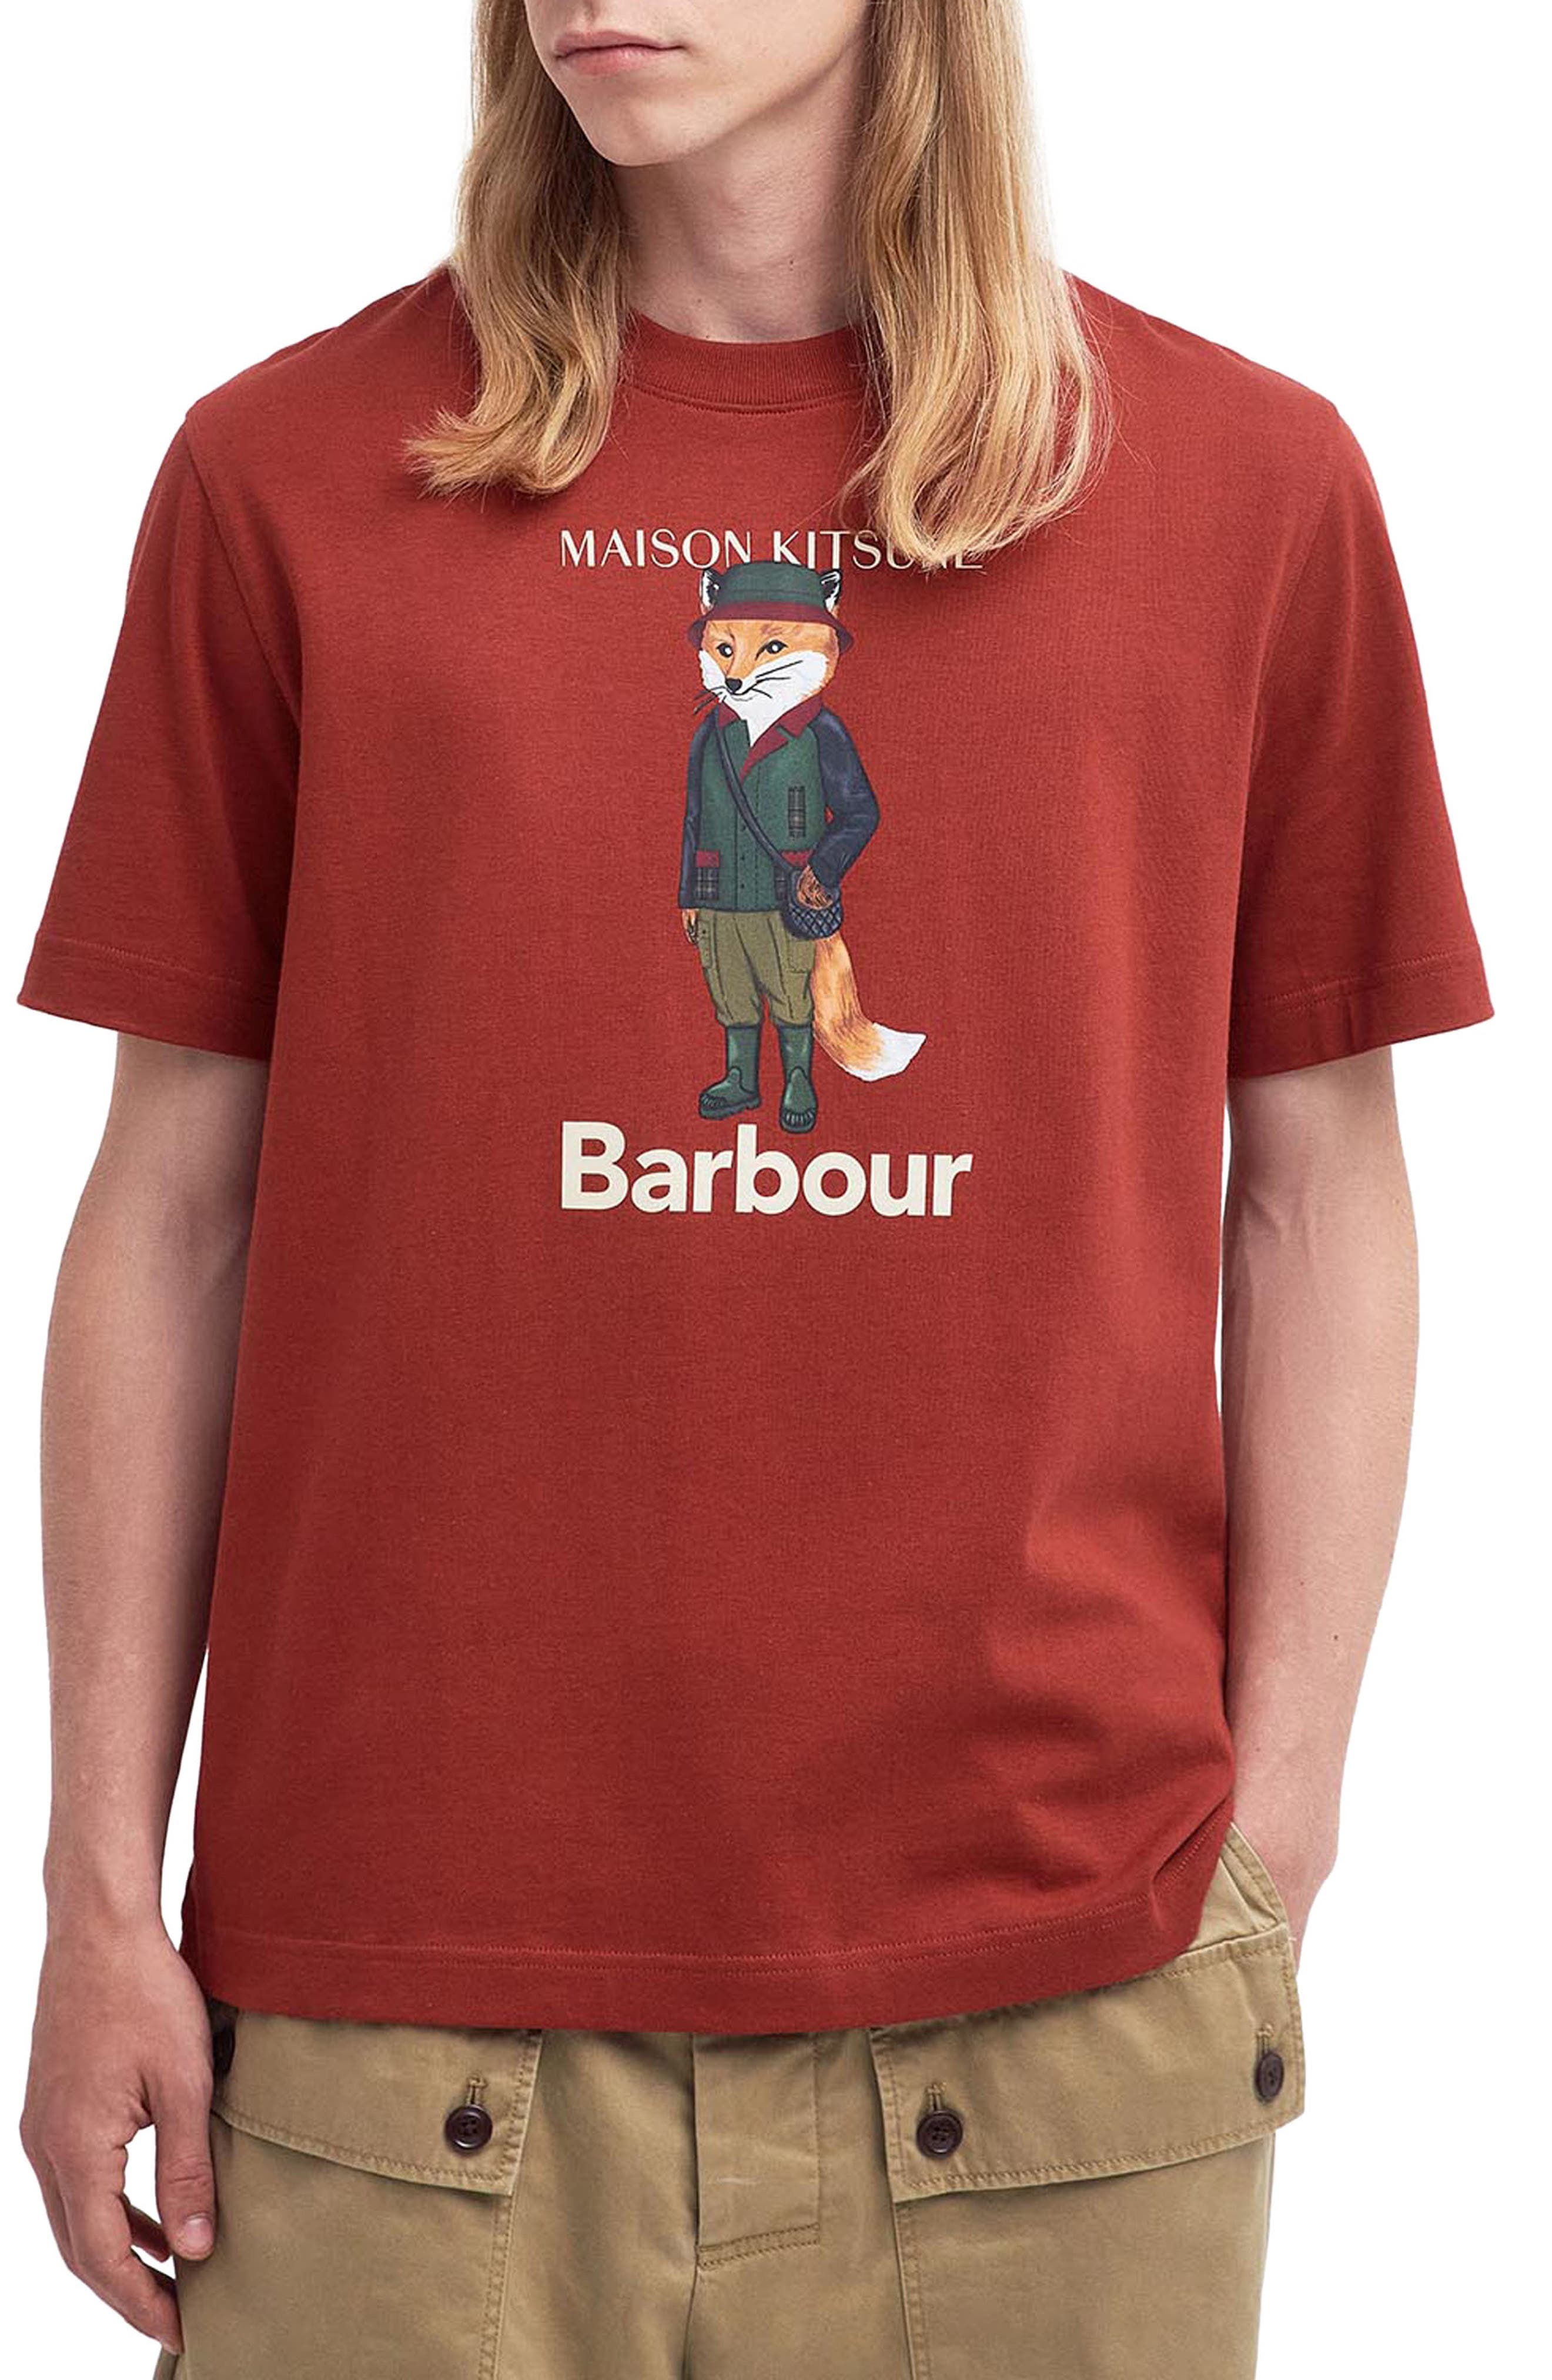 【大阪高裁】Maison Kitsuné x Barbour コットン 長袖 Tシャツ。 トップス